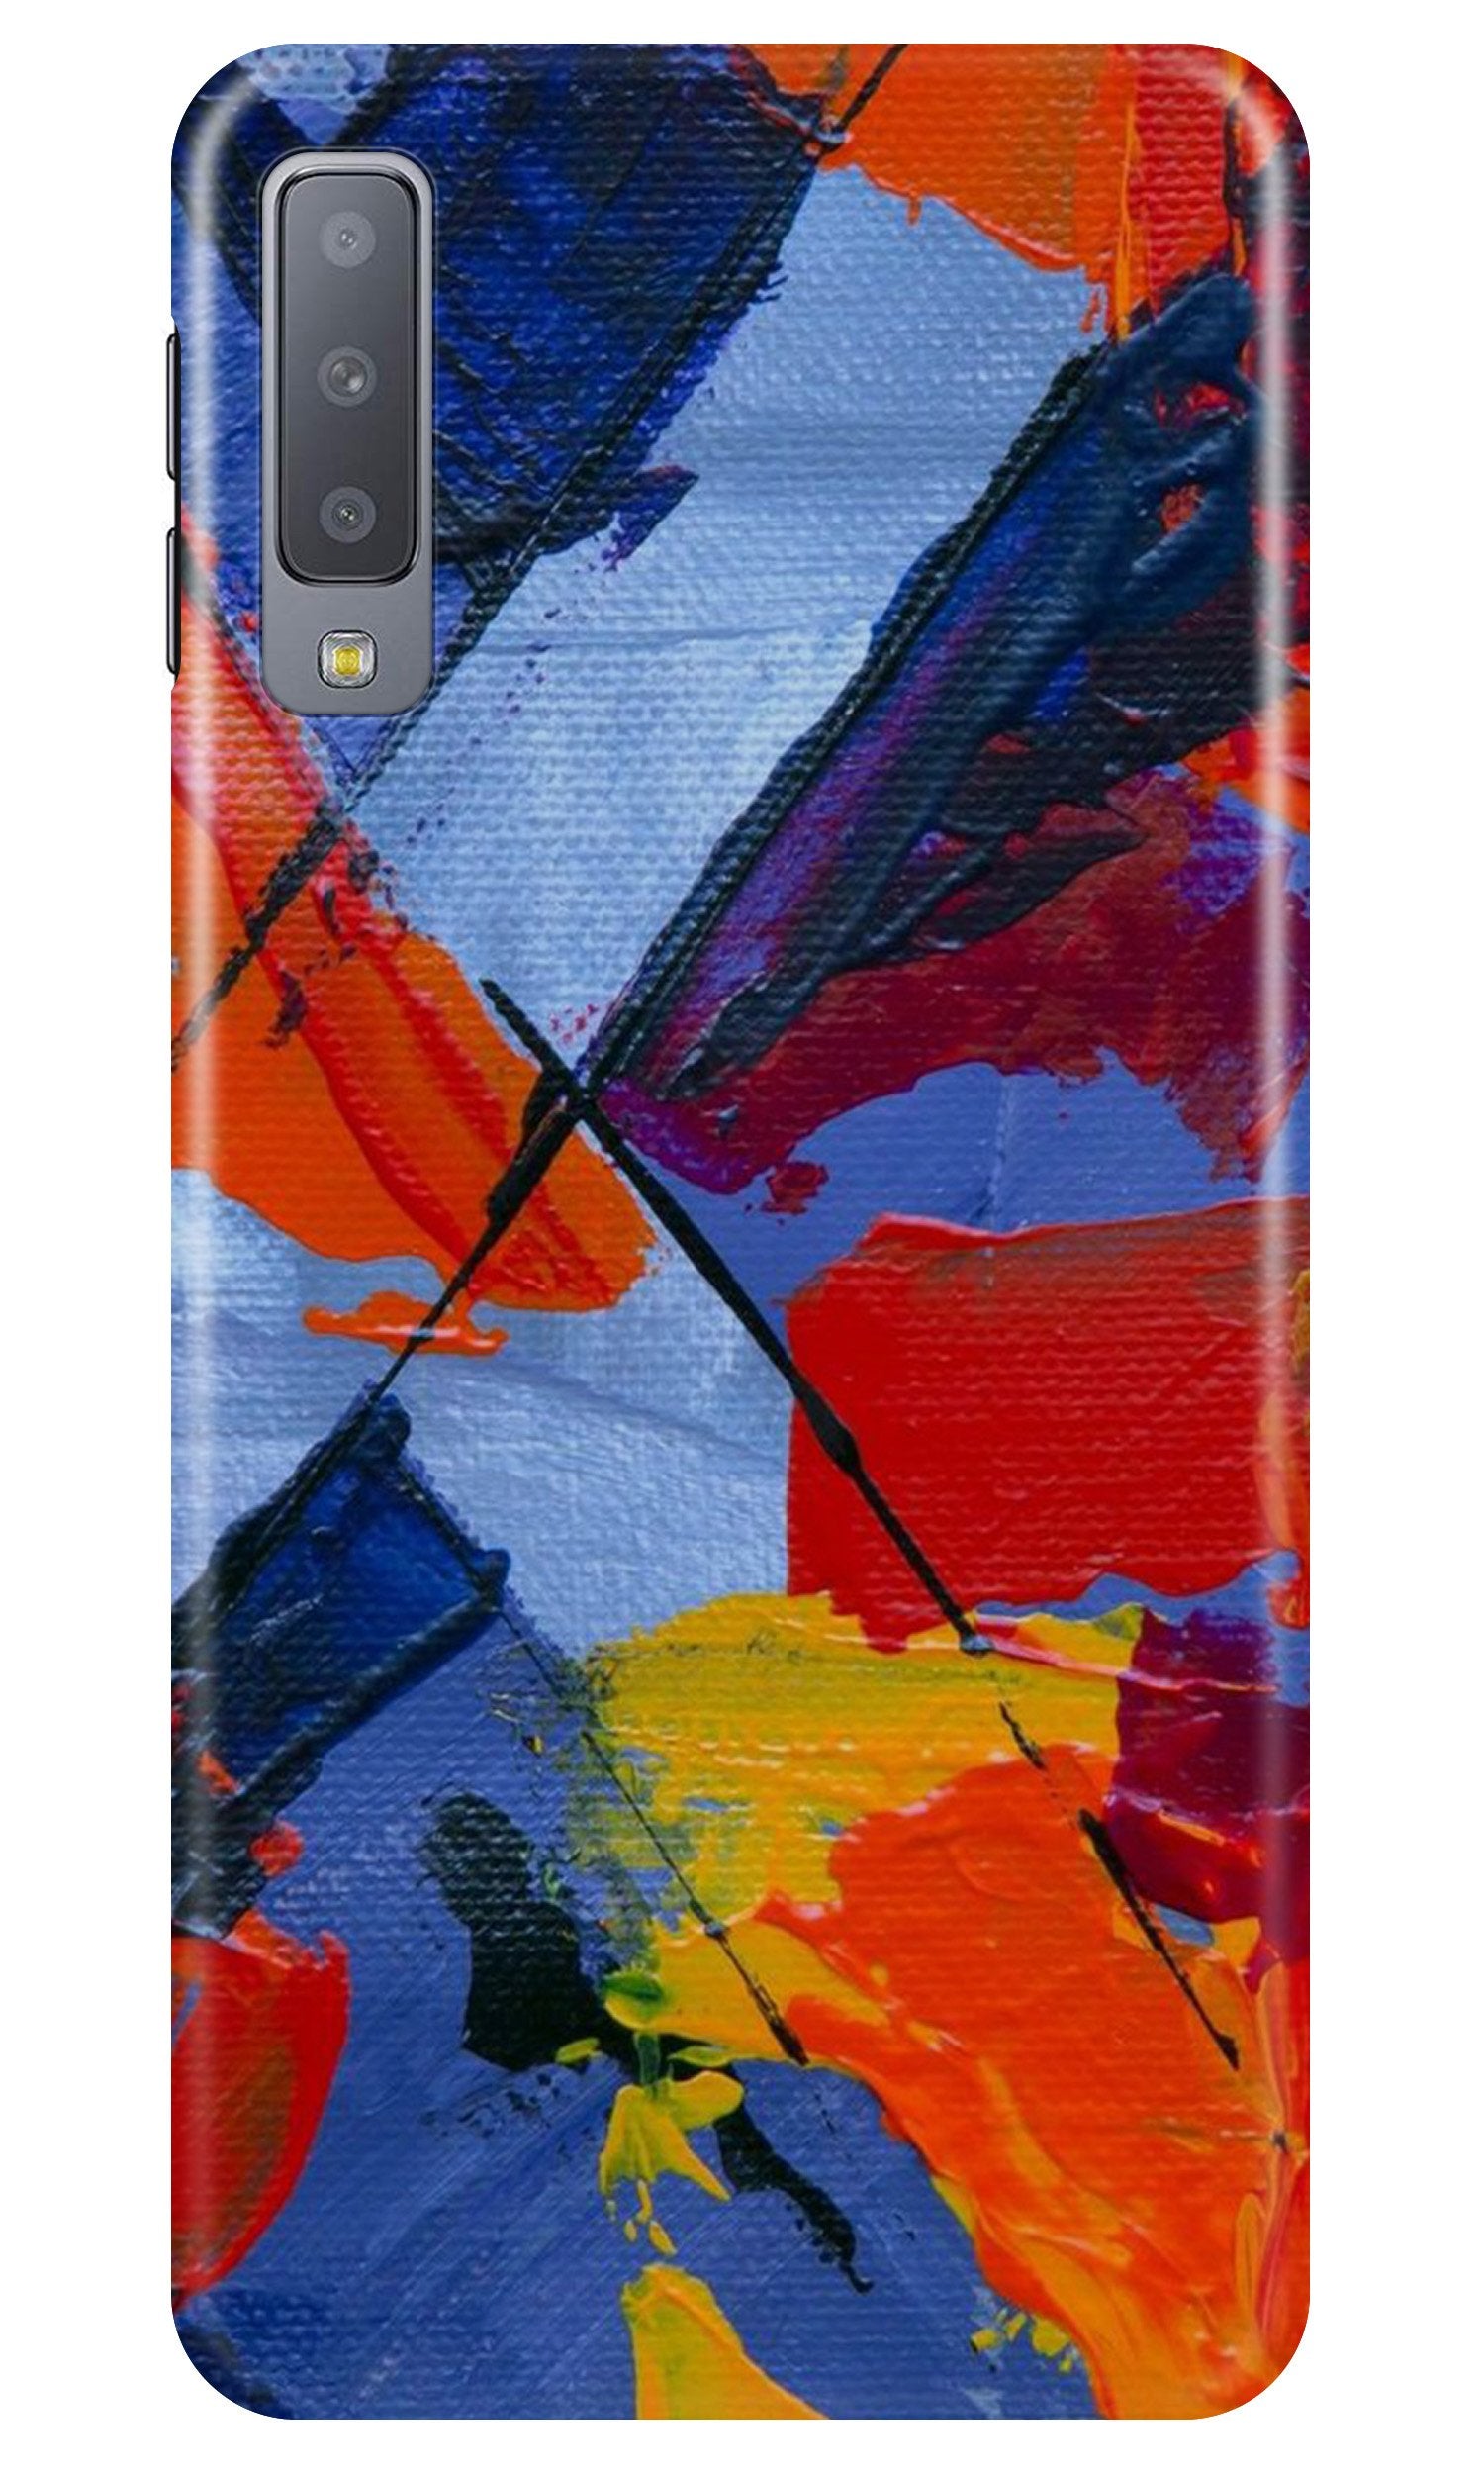 Modern Art Case for Samung Galaxy A70s (Design No. 240)